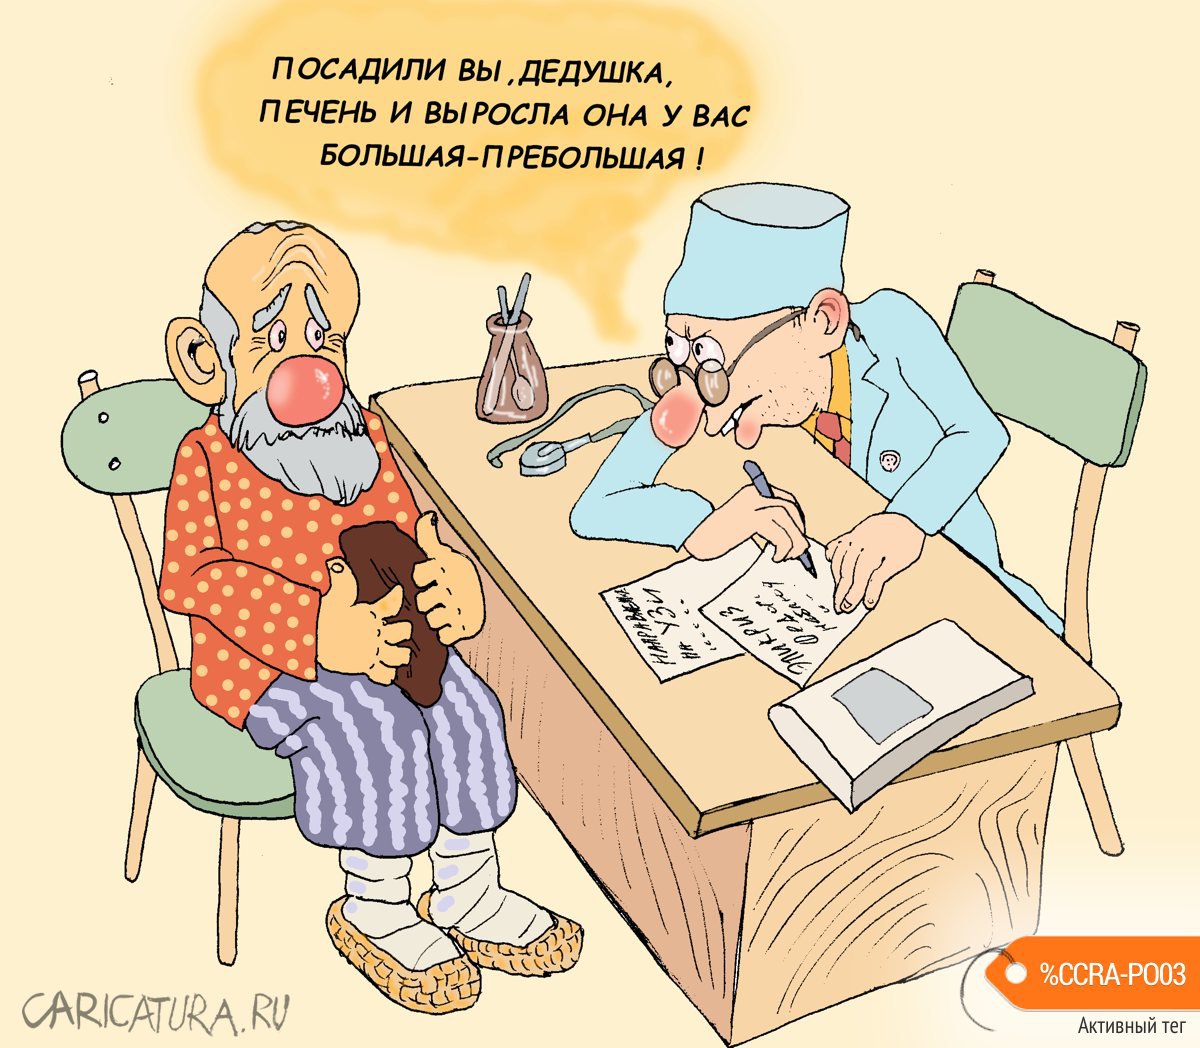 Карикатура "Дед и печень", Булат Ирсаев